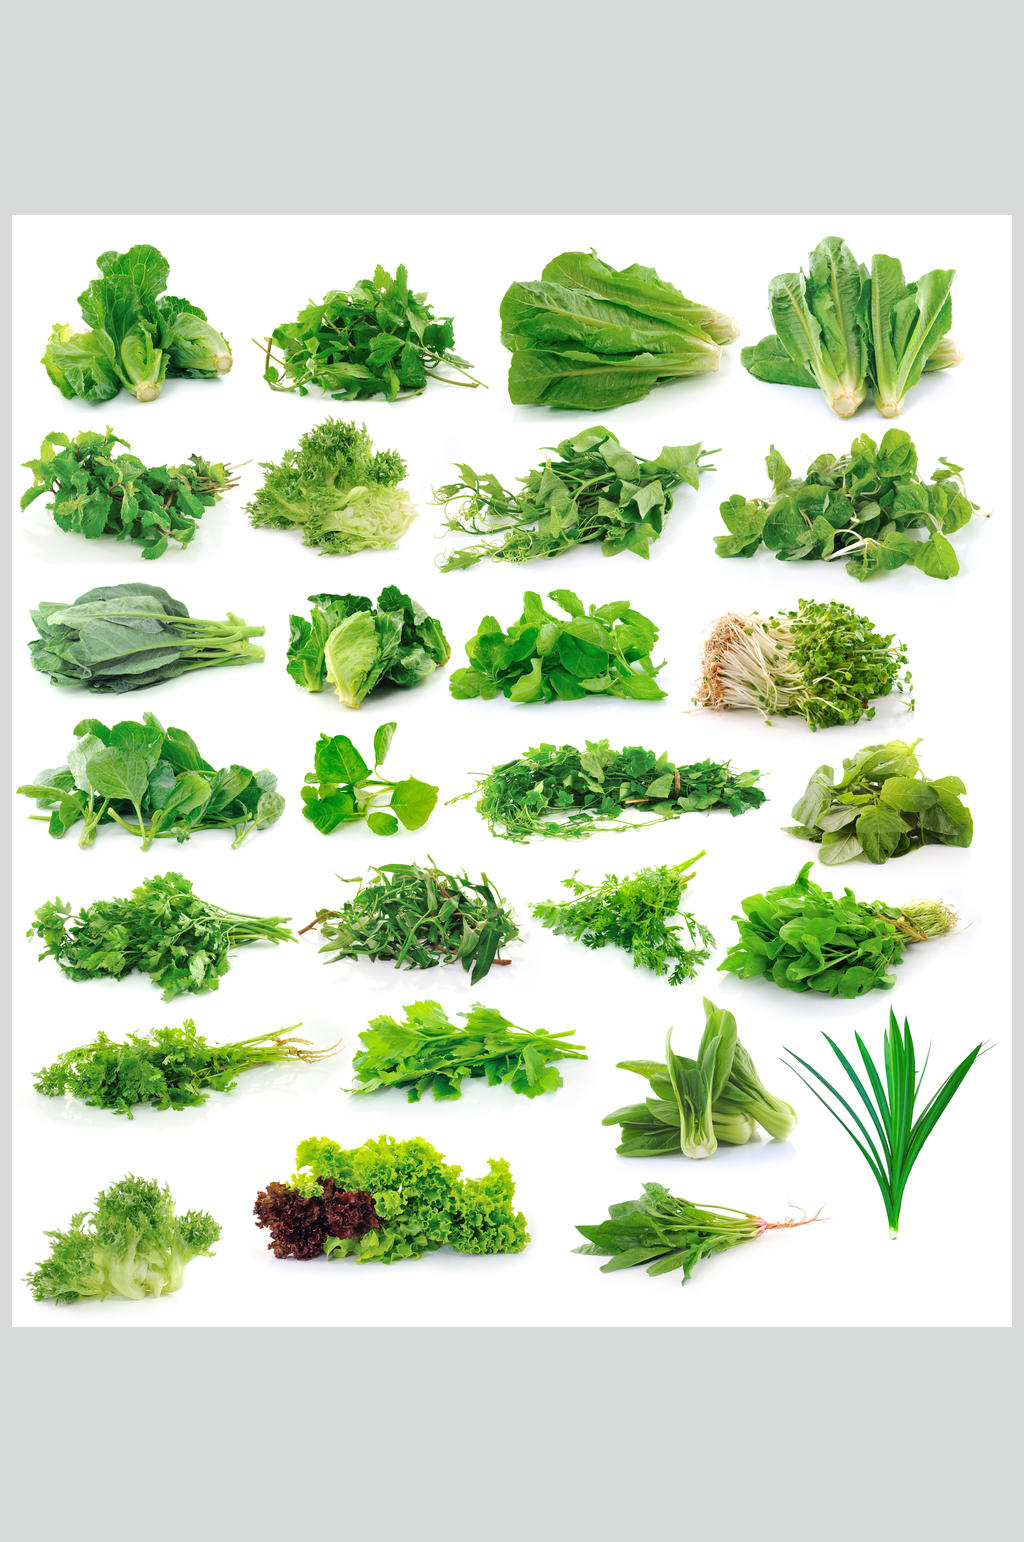 青菜种类 名称图片